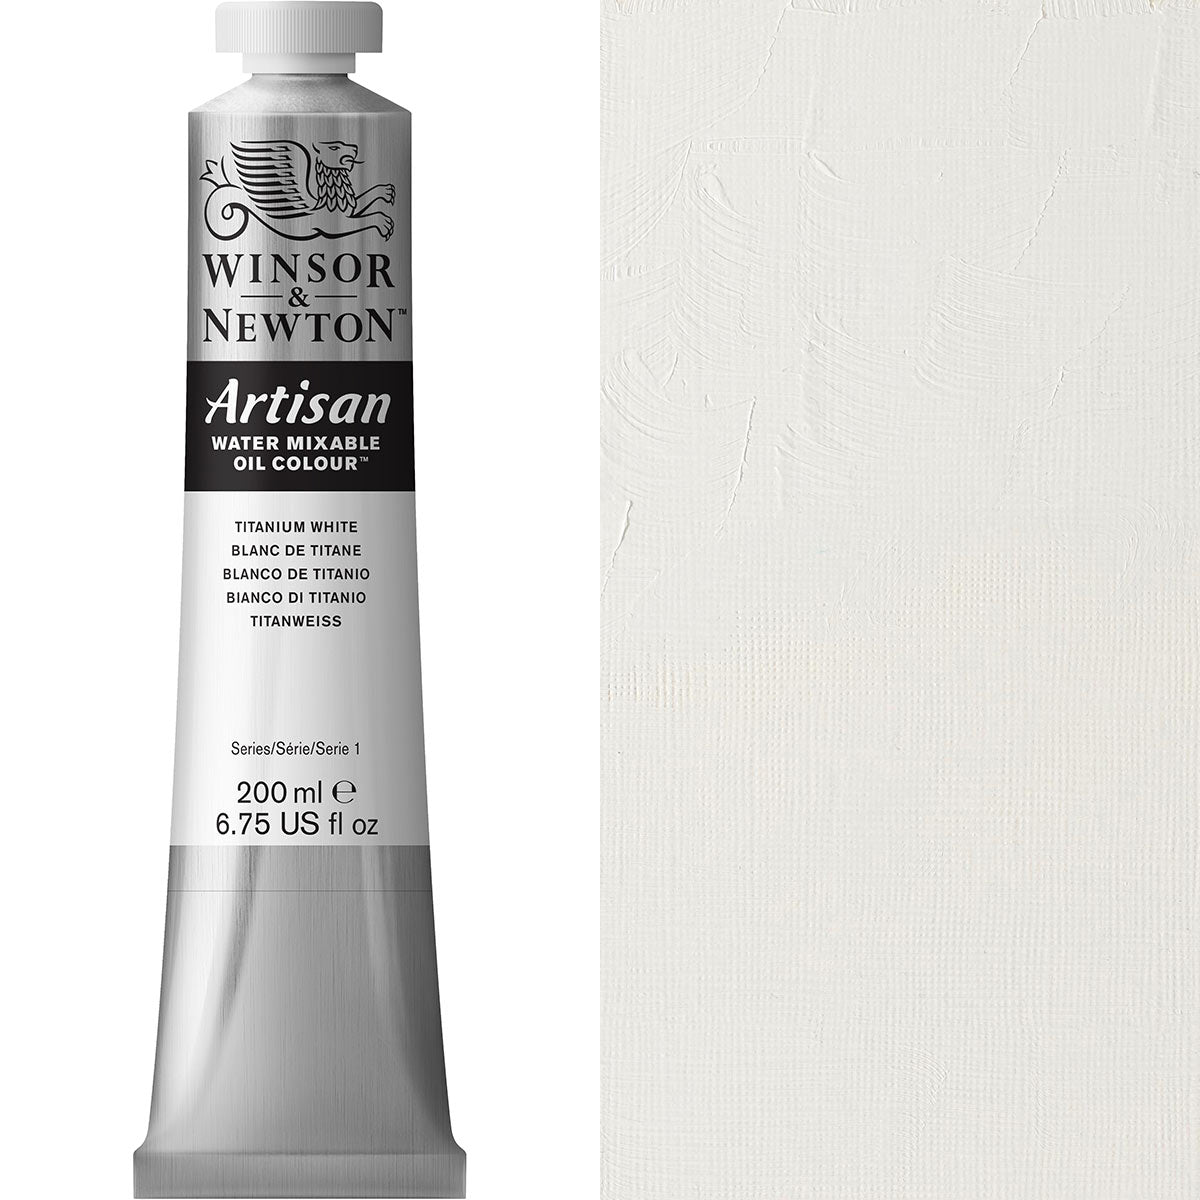 Winsor and Newton - Artisan Oil Colour Watermixable - 200ml - Titanium White